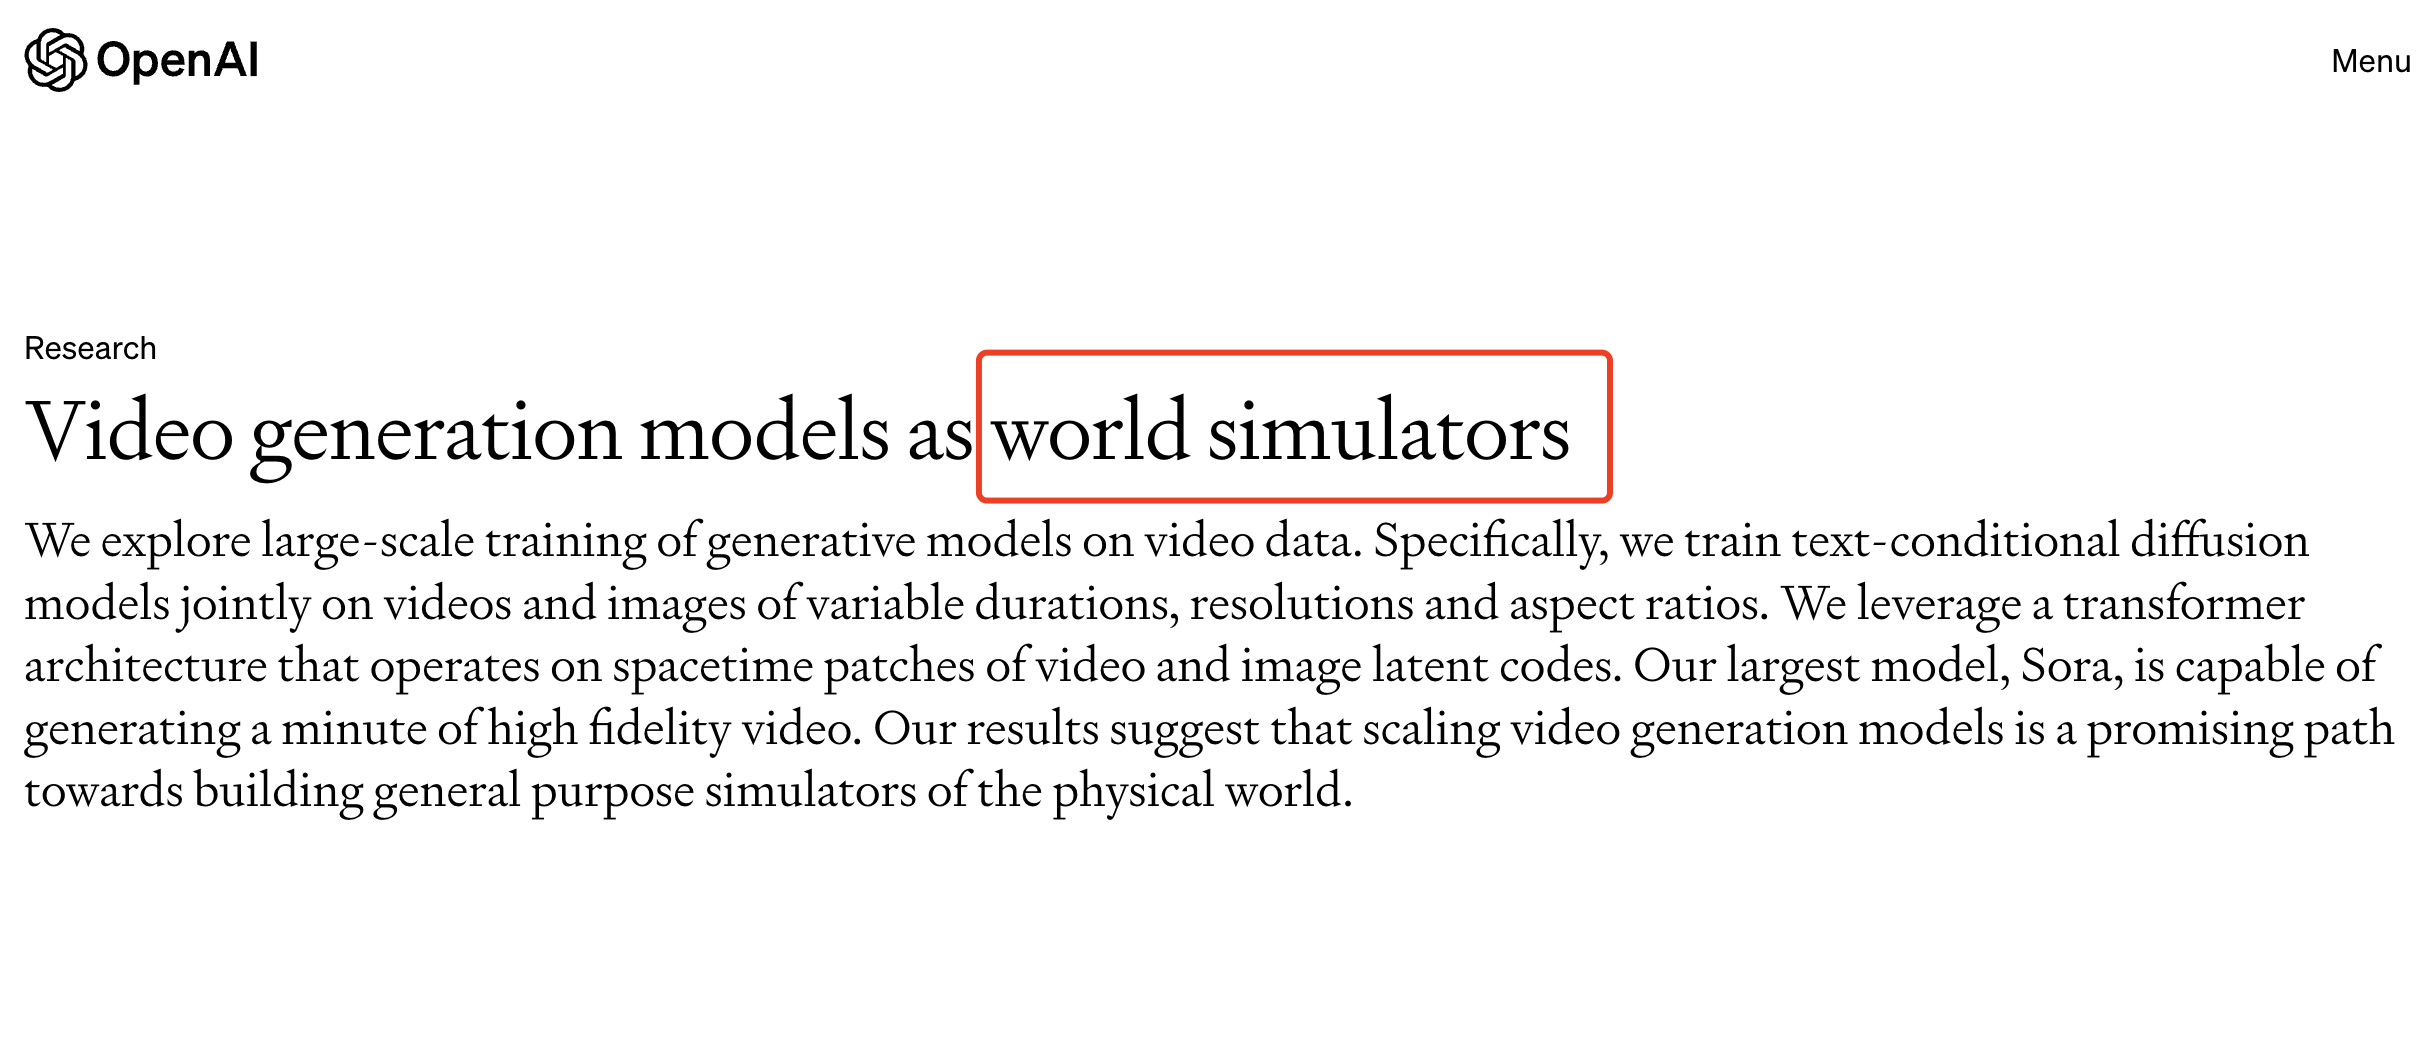 OpenAI 官網上，關於 Sora 的這篇研究論文名為《把影片生成模型作為世界模擬器》。請注意「世界模擬器」（world simulators）這個關鍵字，它是比生成影片更關鍵的核心所在。